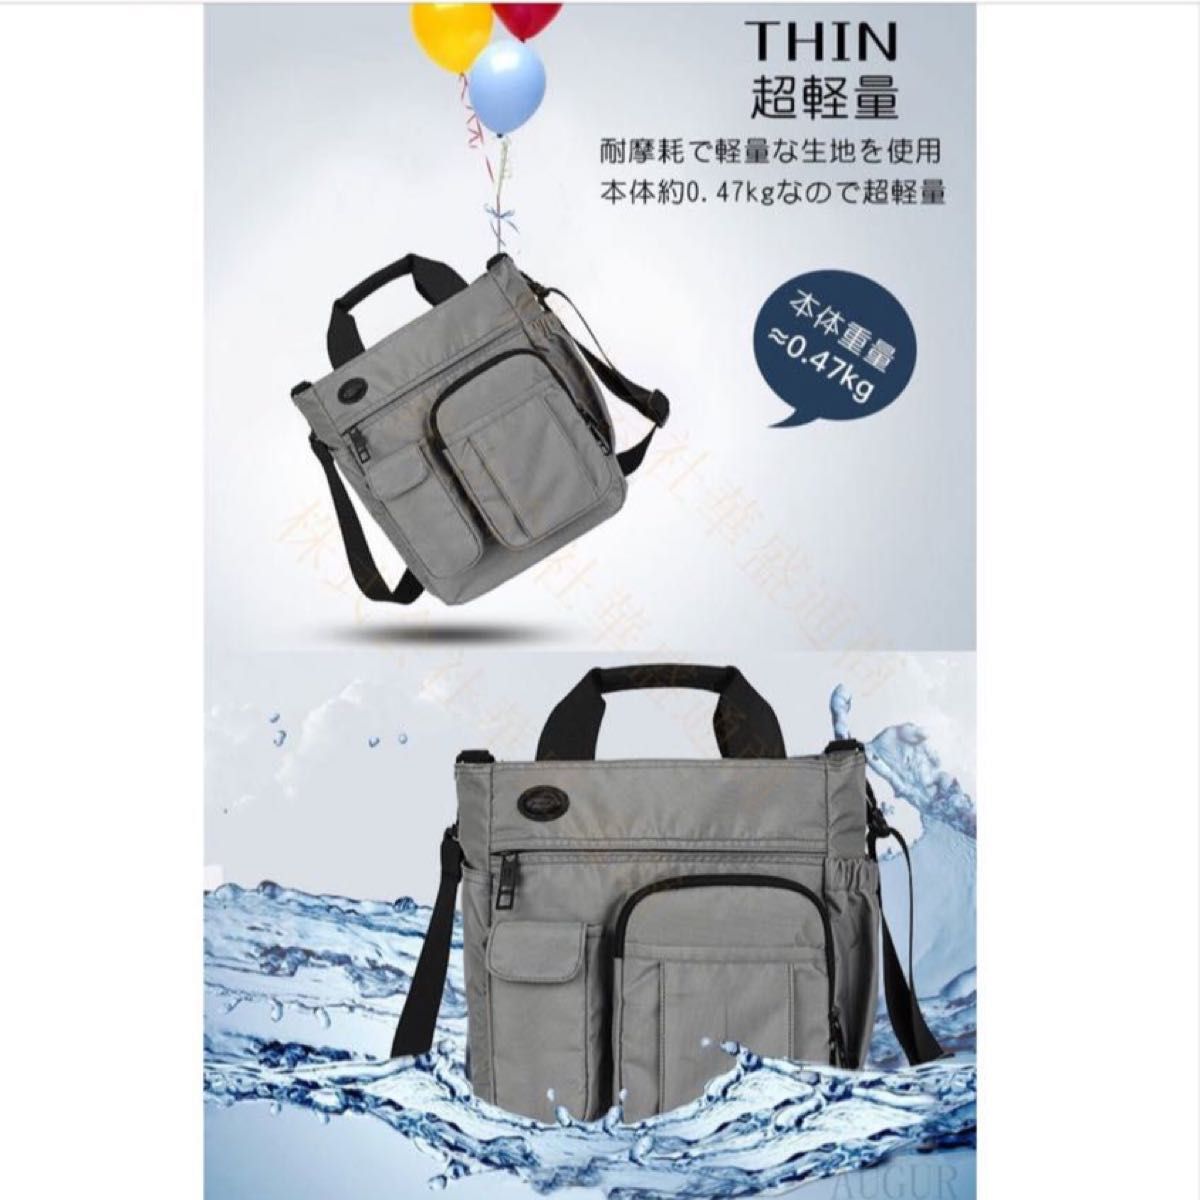 【新品未使用】ショルダーバッグ多機能 軽量 撥水 斜めがけ ビジネスバッグ